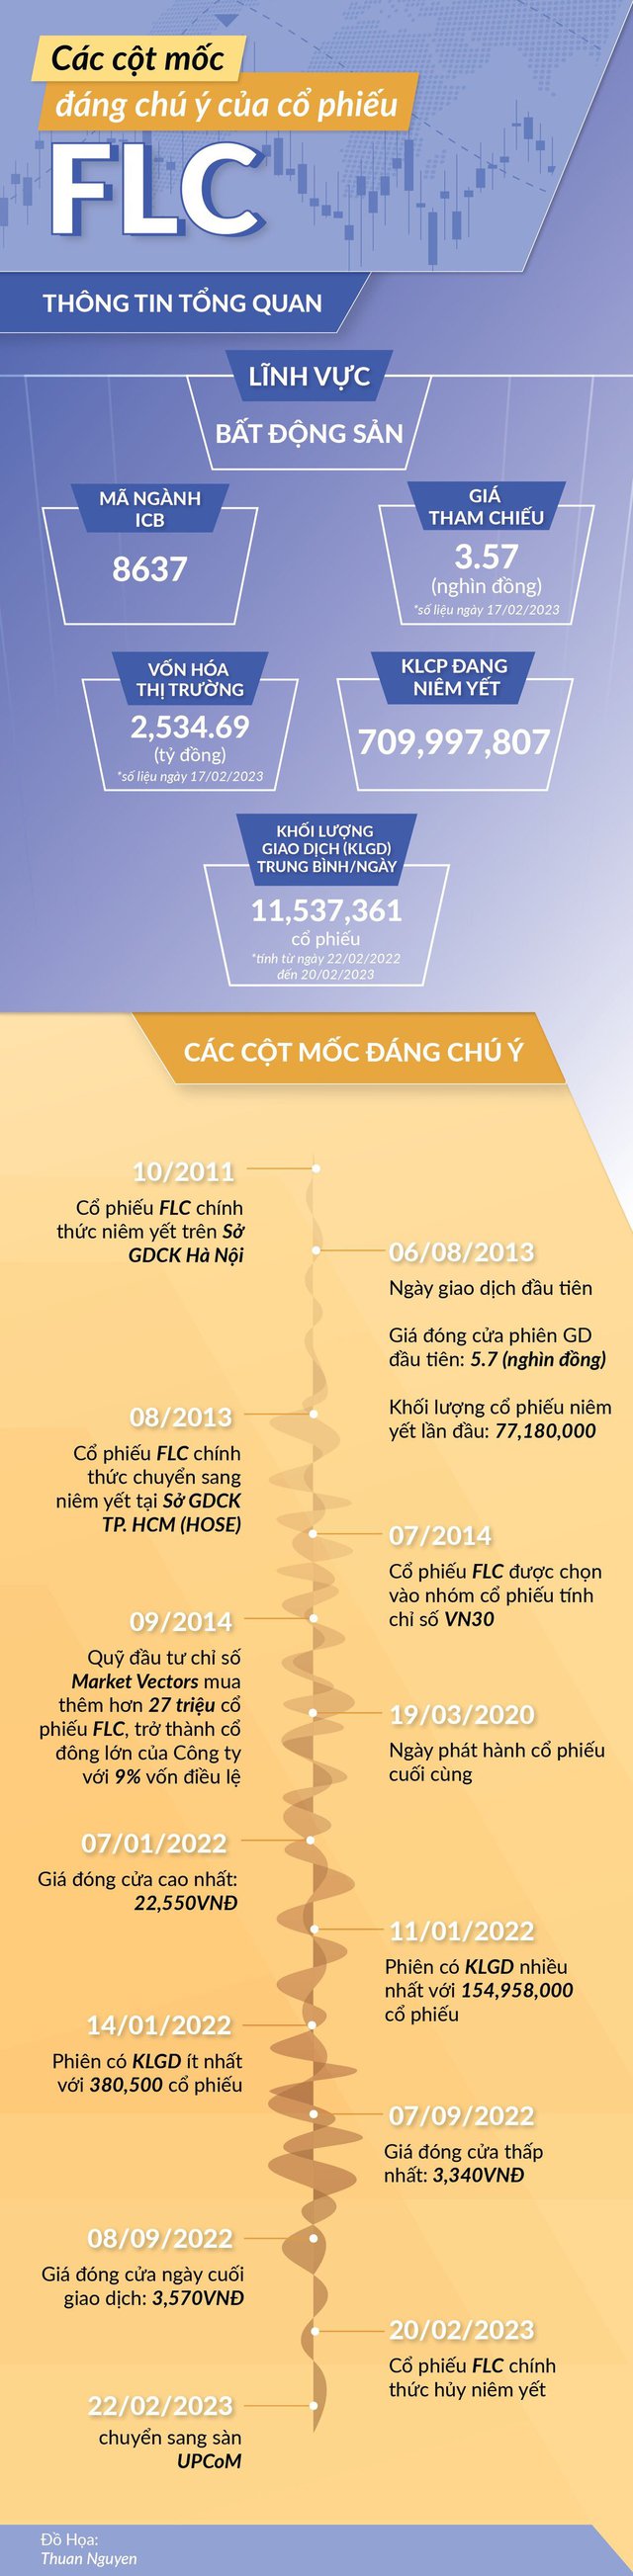 [Infographic]    Nhìn lại lịch sử cổ phiếu FLC trước khi lên sàn UPCoM - Ảnh 1.